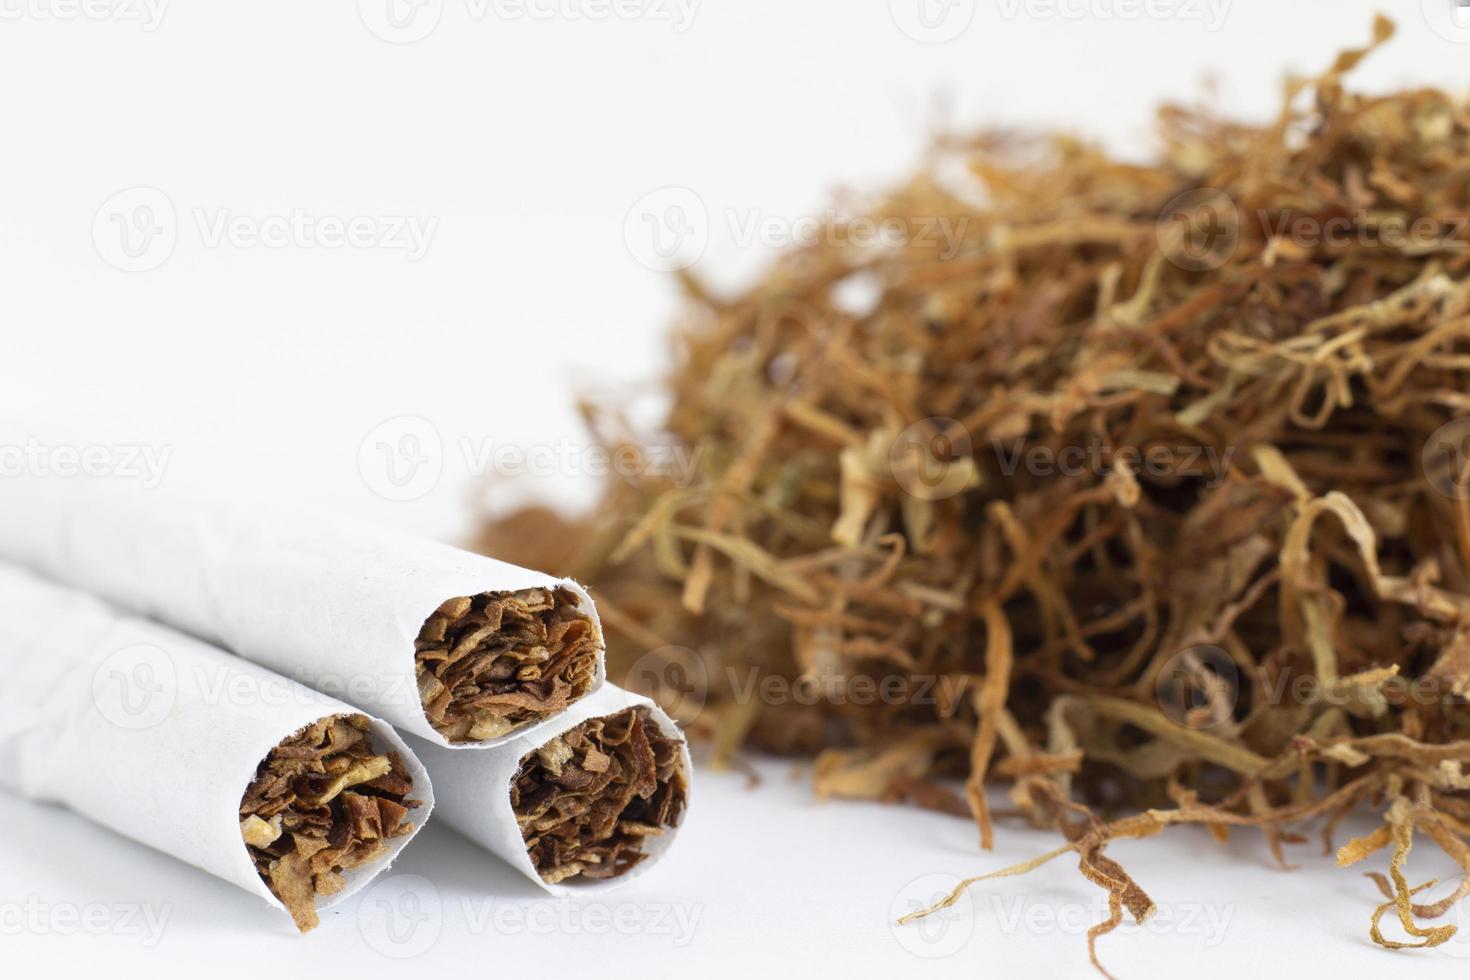 primer plano de cigarrillos sobre un fondo de tabaco seco. morir de cáncer debido al uso de tabaco y productos de tabaco. foto